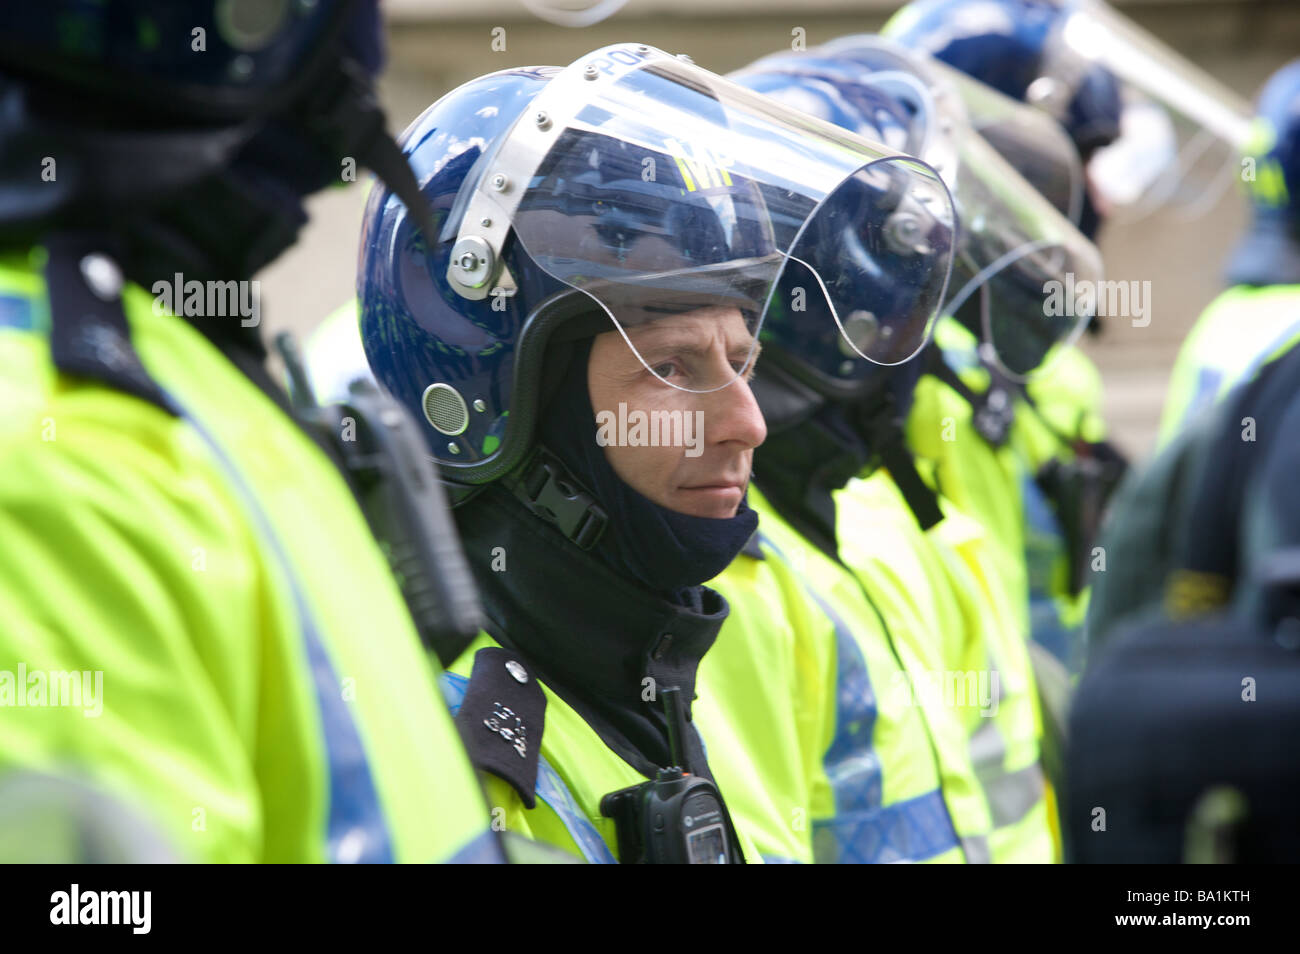 Polizei in Kampfmontur G20 Gipfel p-Reihe von Polizisten in Kampfmontur bei G20-Gipfel Protest, London Stockfoto